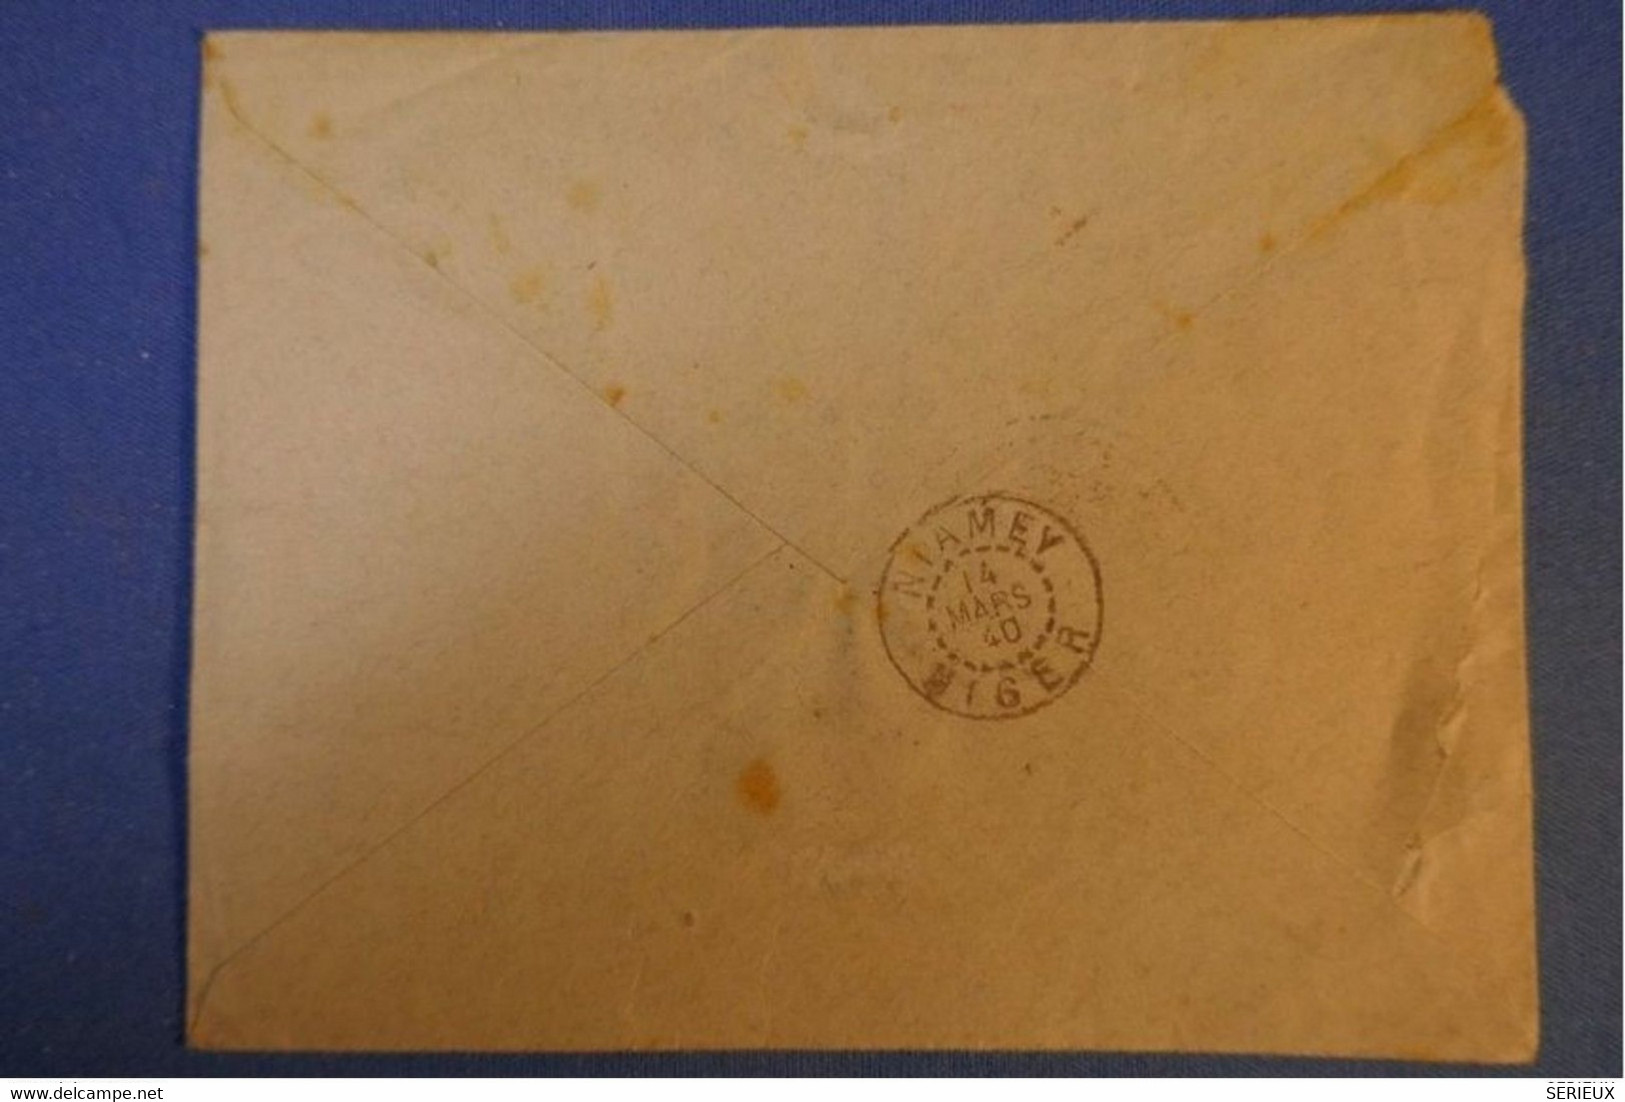 463 NIGER LETTRE RARE RECOM. 1940 FRANC MILITAIRE +CONTROLE VOIE SAHARIENNE NIAMEY   BRANNE FRANCE +AFFRANCH INTERESSANT - Lettres & Documents